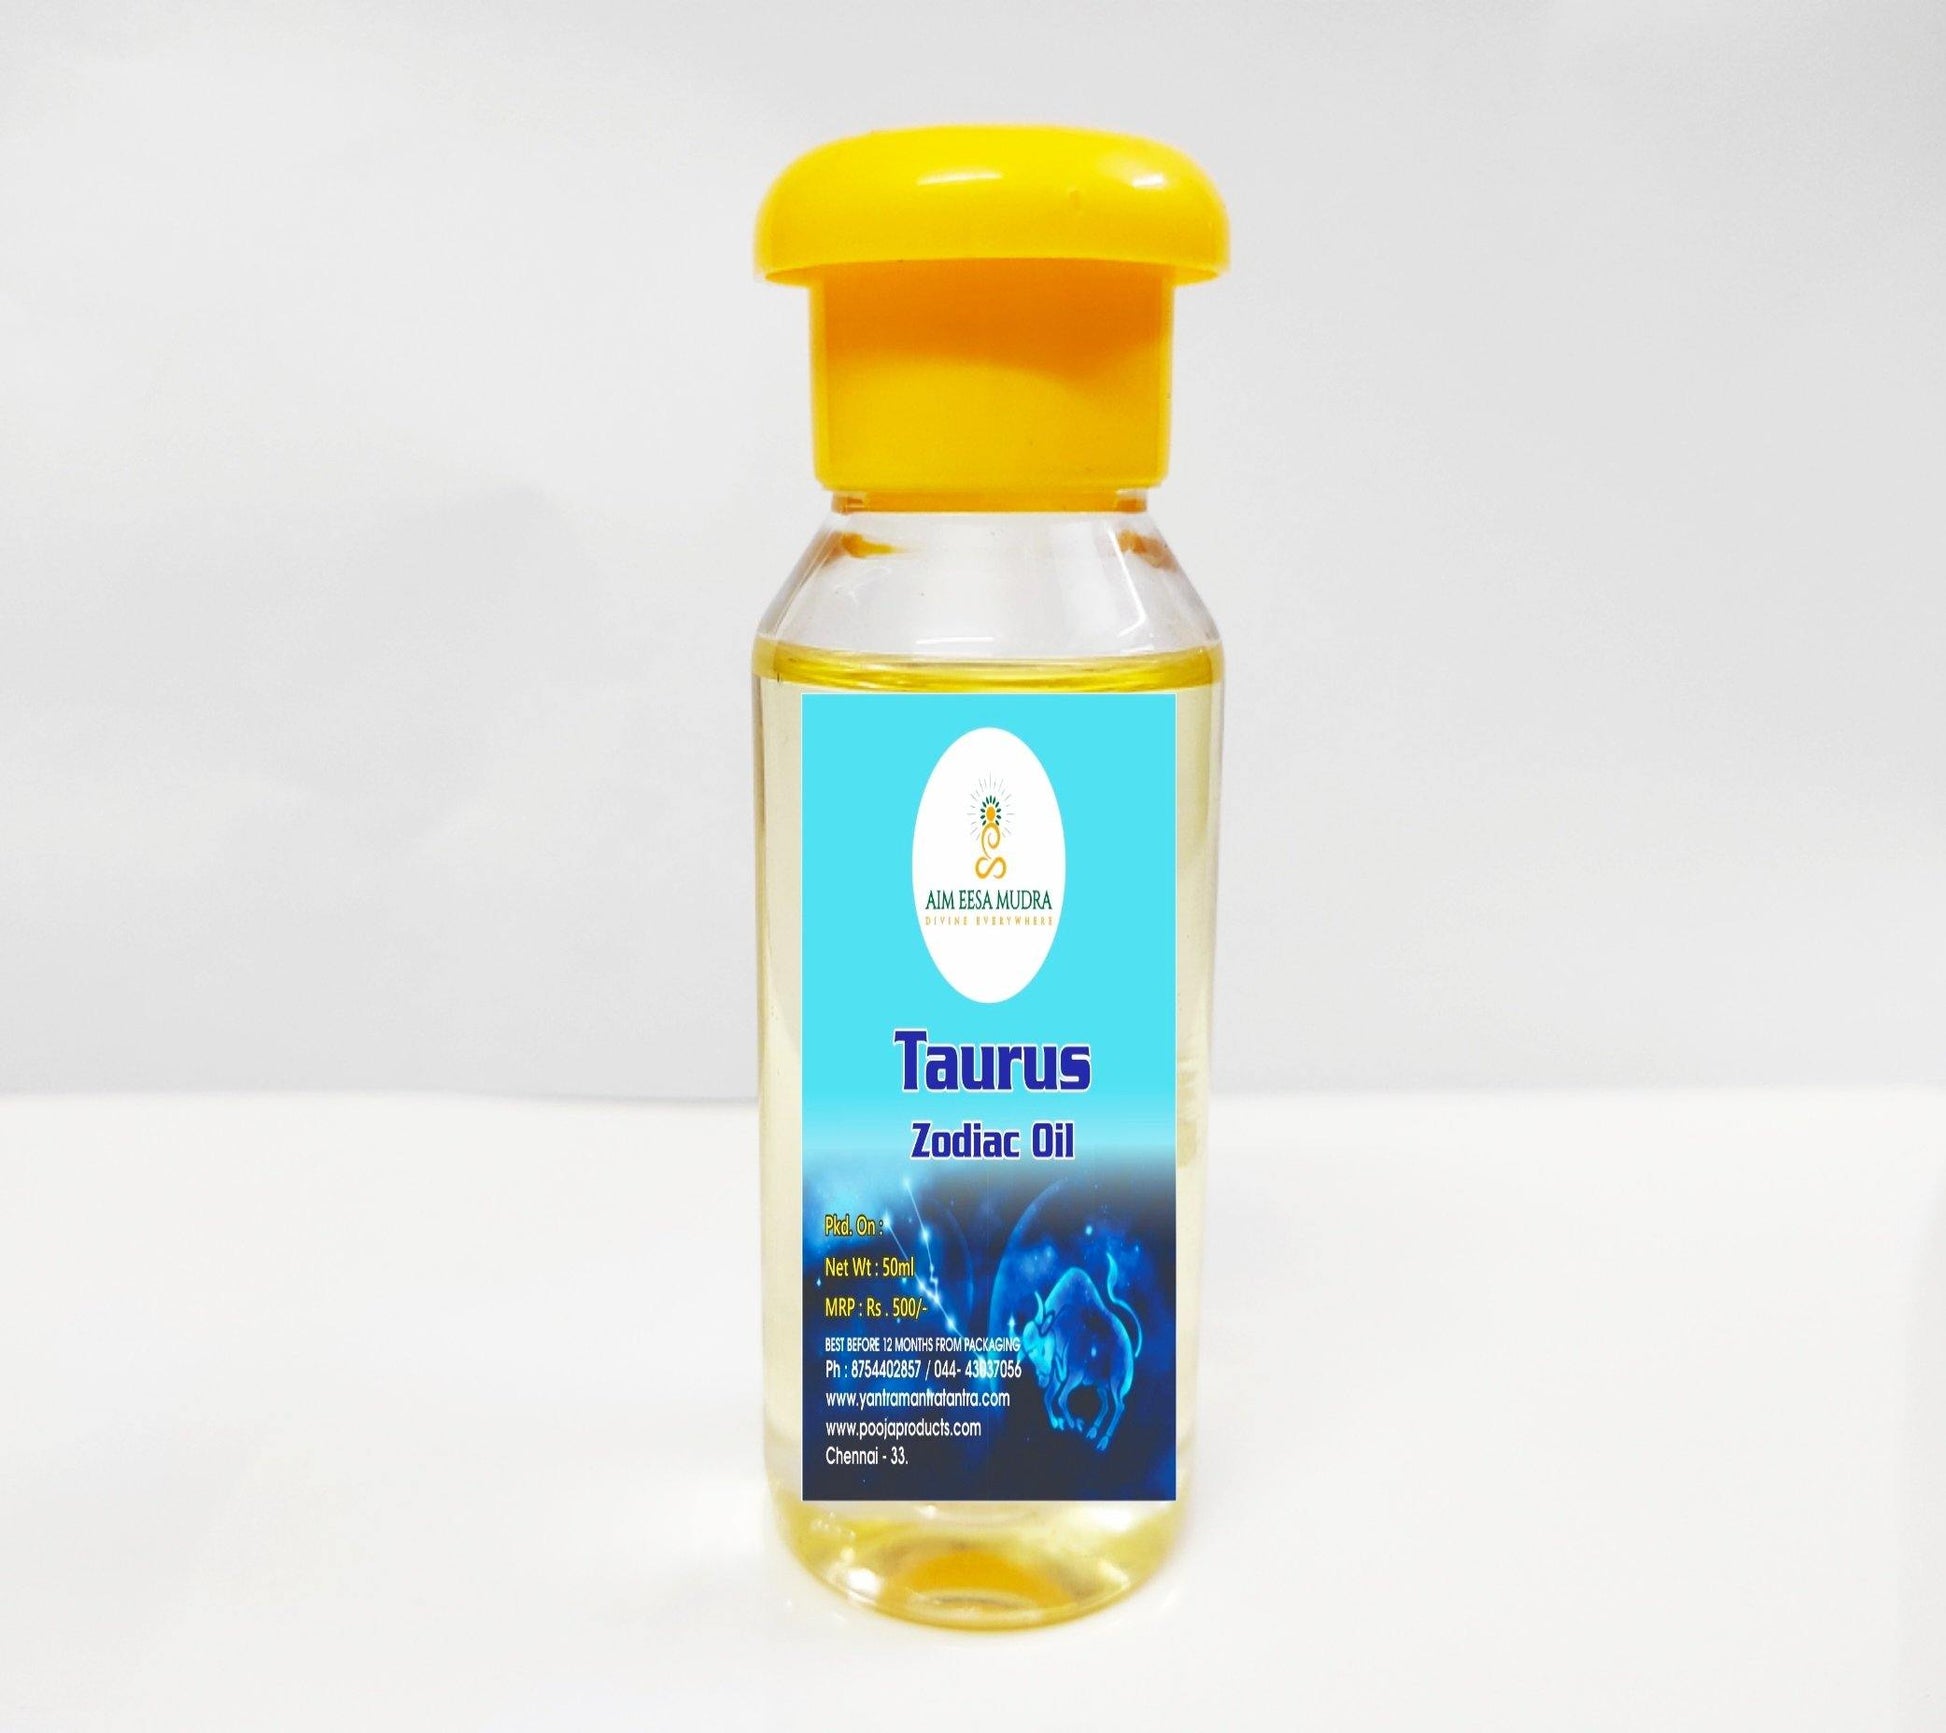 Zodiac Oils Taurus  (50ml)  (𝗧𝗛𝗜𝗦 𝗣𝗥𝗢𝗗𝗨𝗖𝗧 𝗔𝗩𝗔𝗜𝗟𝗕𝗟𝗘 𝗢𝗡𝗟𝗬 𝗜𝗡𝗦𝗜𝗗𝗘 𝗜𝗡𝗗𝗜𝗔) - PoojaProducts.com